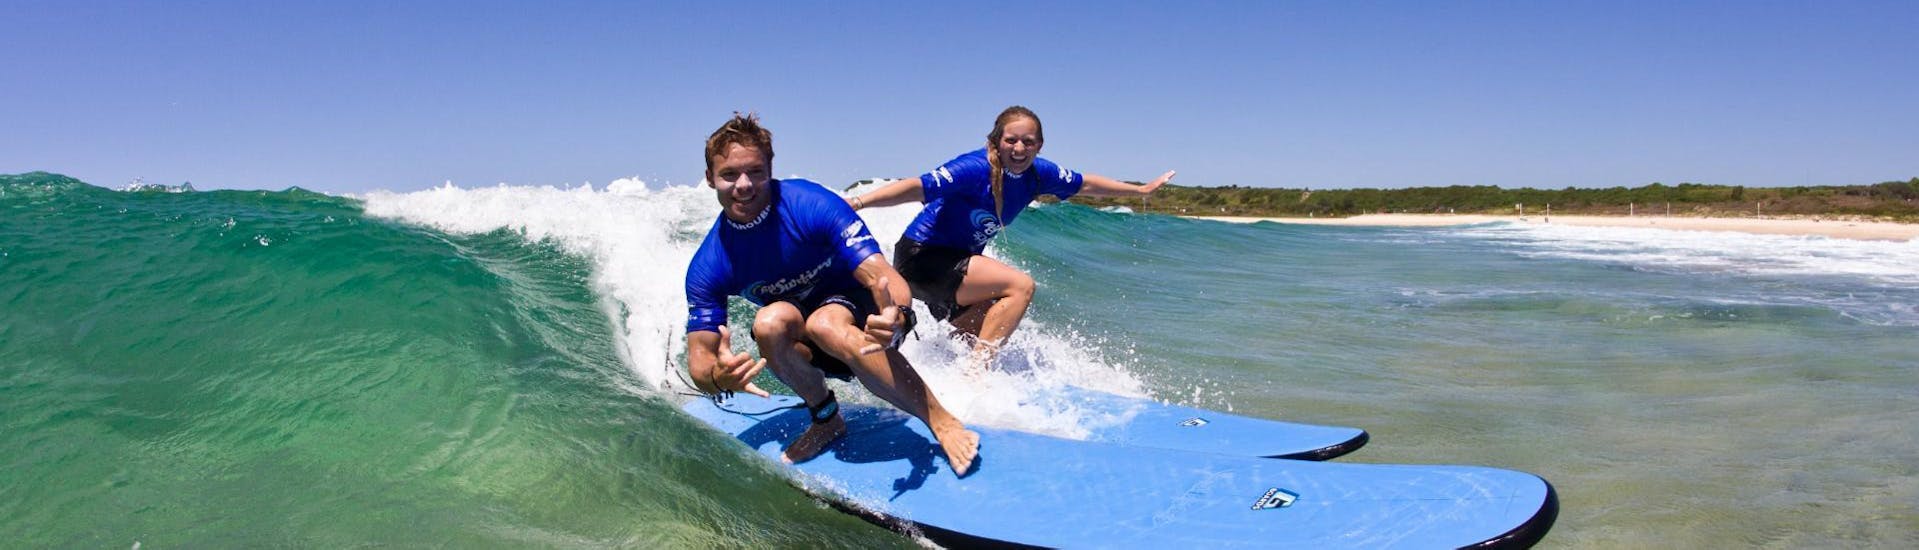 Curso de Surf en Maroubra a partir de 12 años para principiantes.